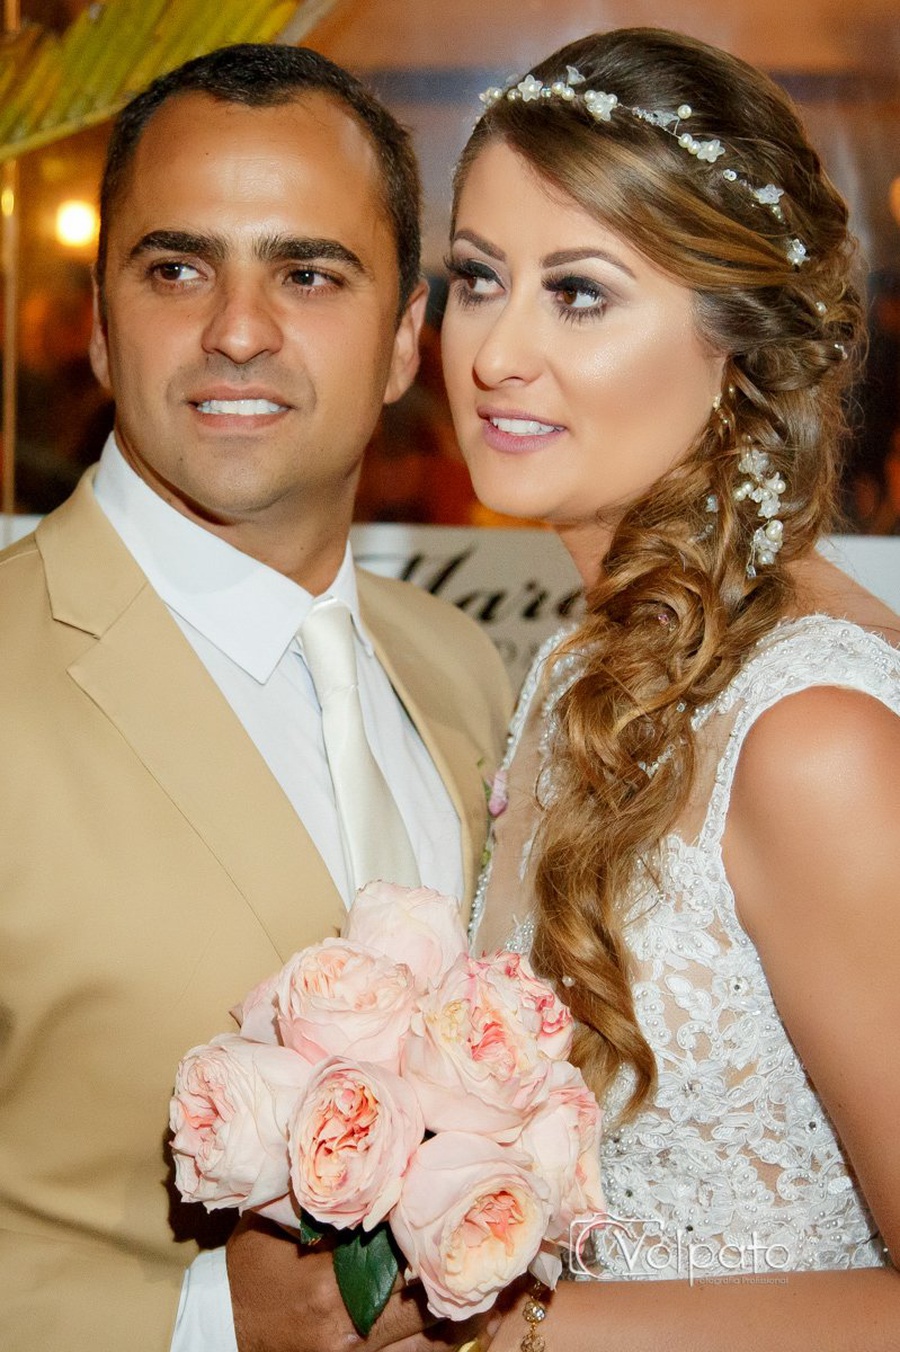 Casamento | Cássia & Antonio 